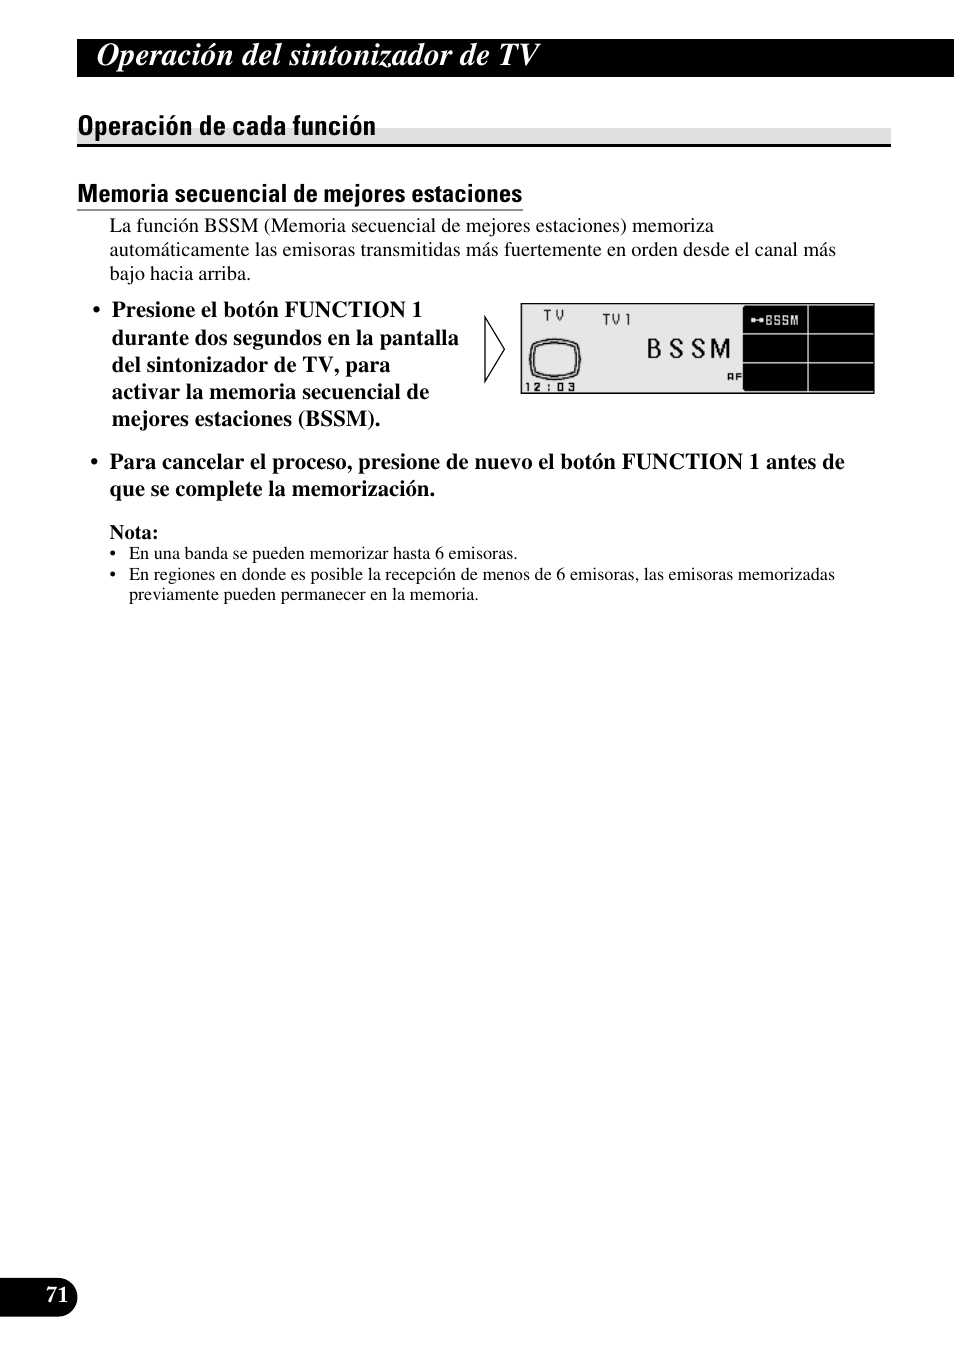 Operación de cada función, Memoria secuencial de mejores estaciones, Operación del sintonizador de tv | Pioneer RS-D7R Manual del usuario | Página 72 / 91